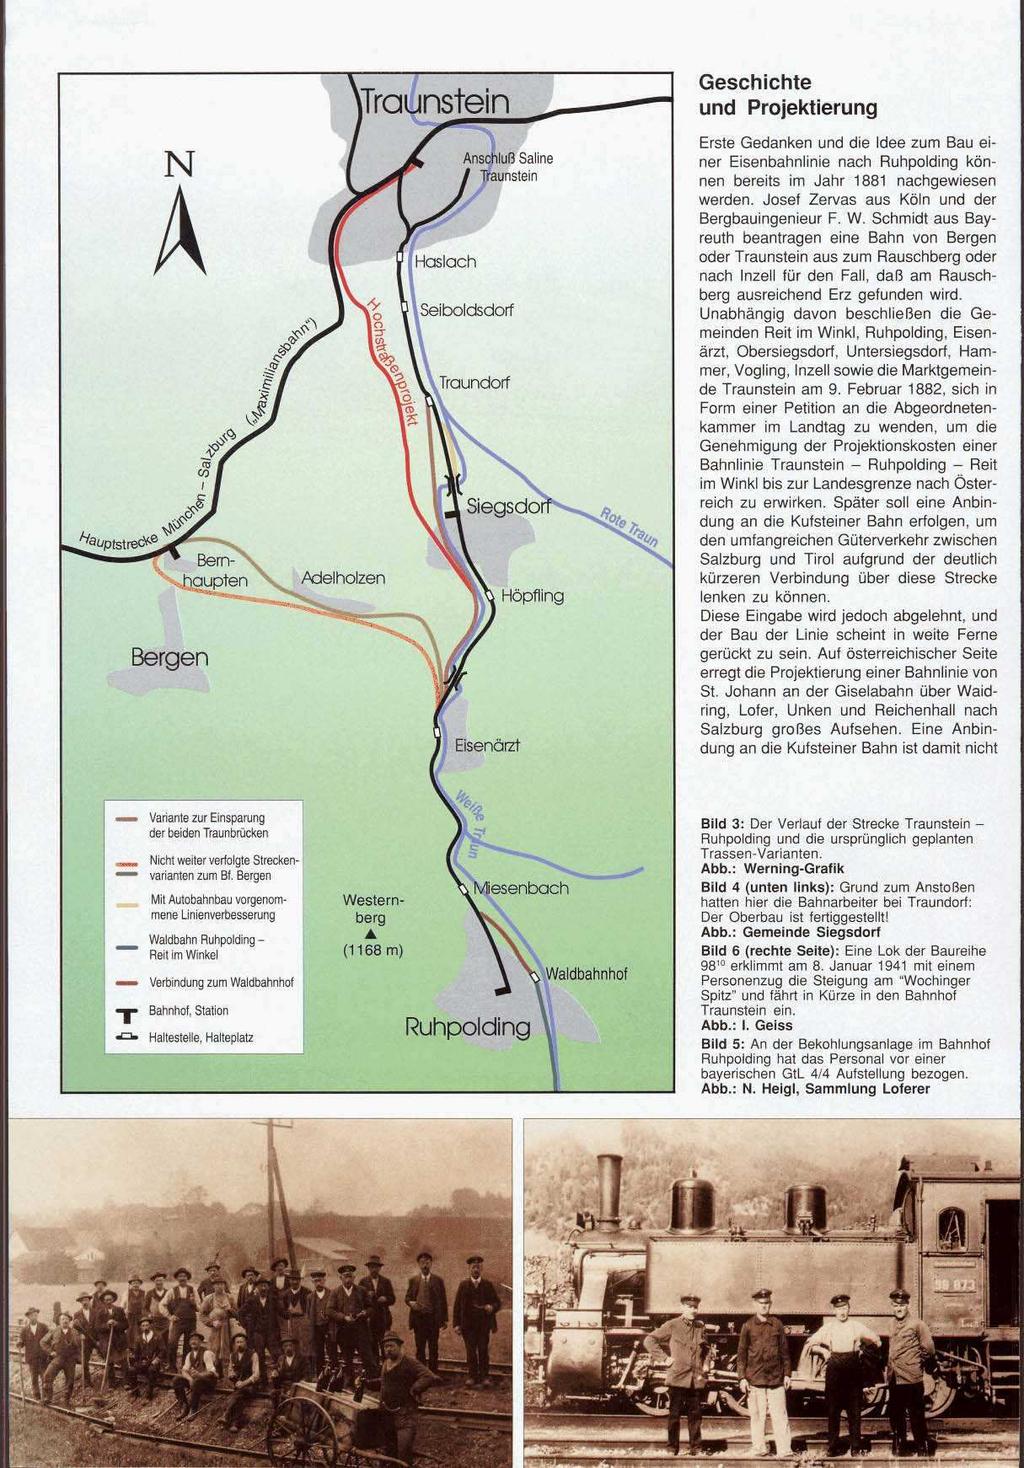 N A Geschichte und Projektierung Erste Gedanken und die Idee zum Bau einer Eisenbahnlinie nach Ruhpolding können bereits im Jahr 1881 nachgewiesen werden.